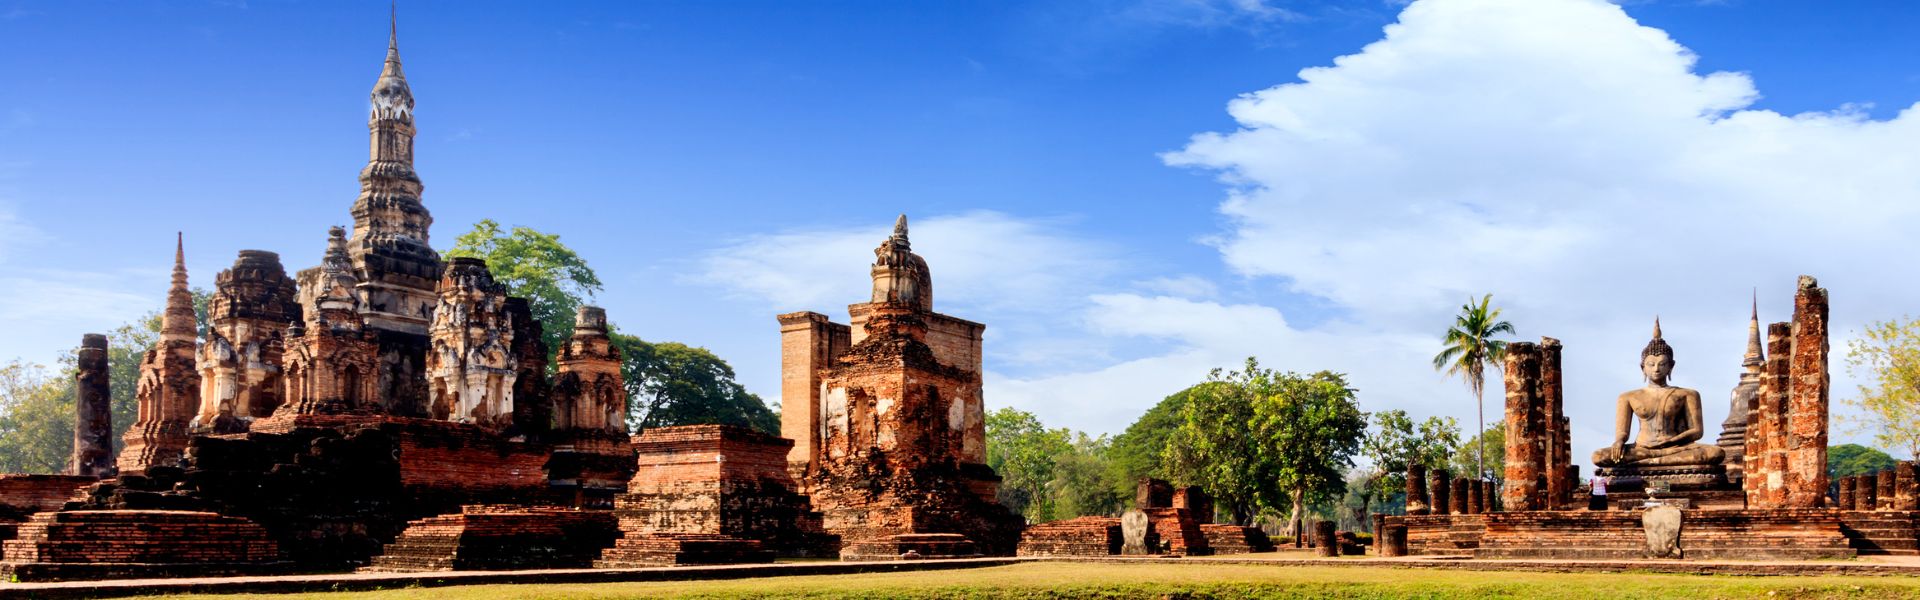 Dicas e conselhos de viagem para Sukhothai